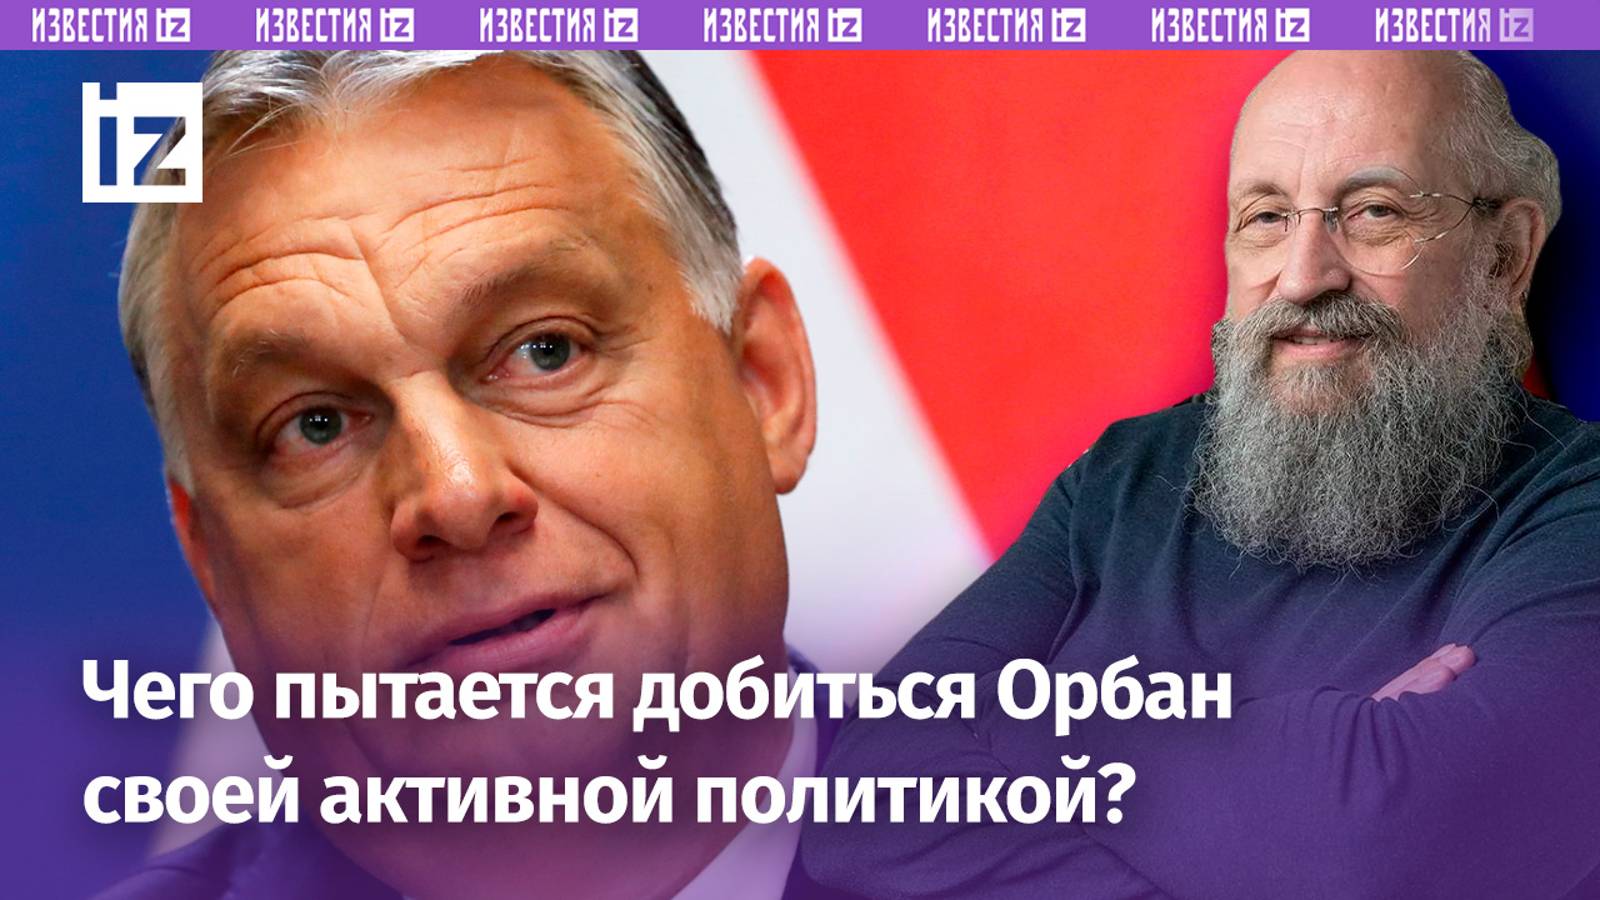 Орбан – единственный миротворец в ЕС. Премьер Венгрии ведет игру против Украины / Открытым текстом